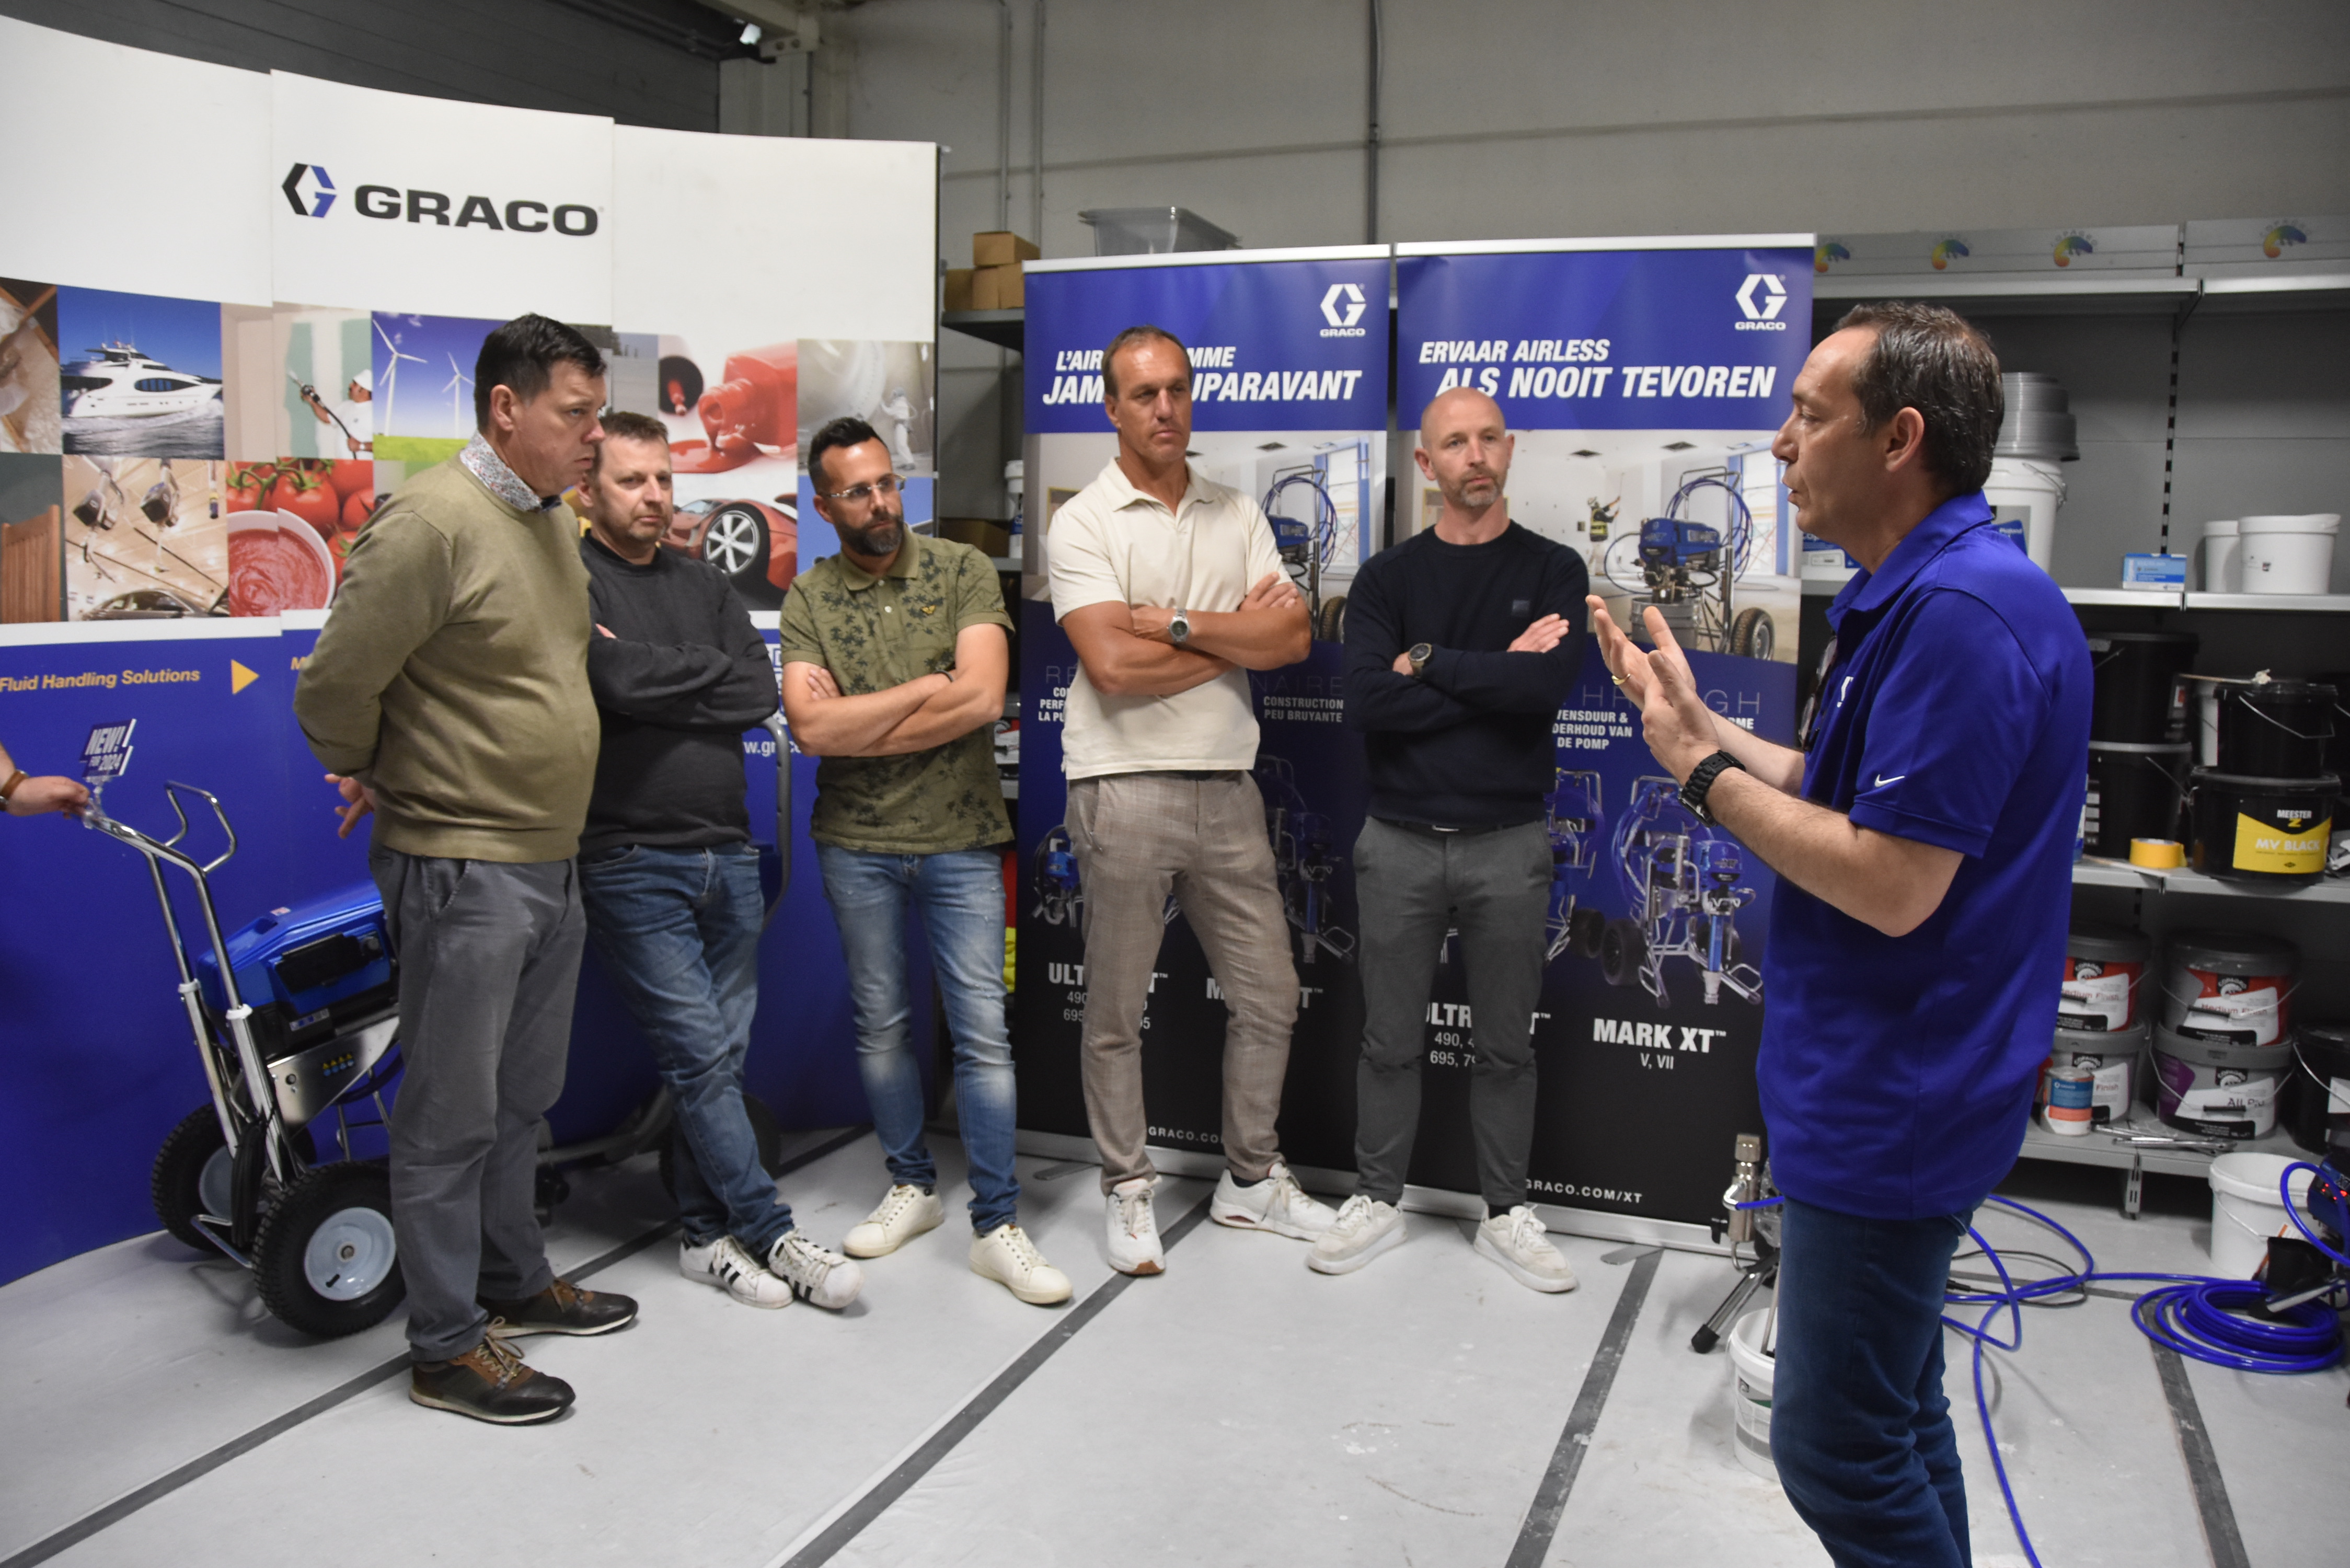 Succesvolle demodagen van de nieuwe Graco Xtreme Torque spuitmachines bij Copagro